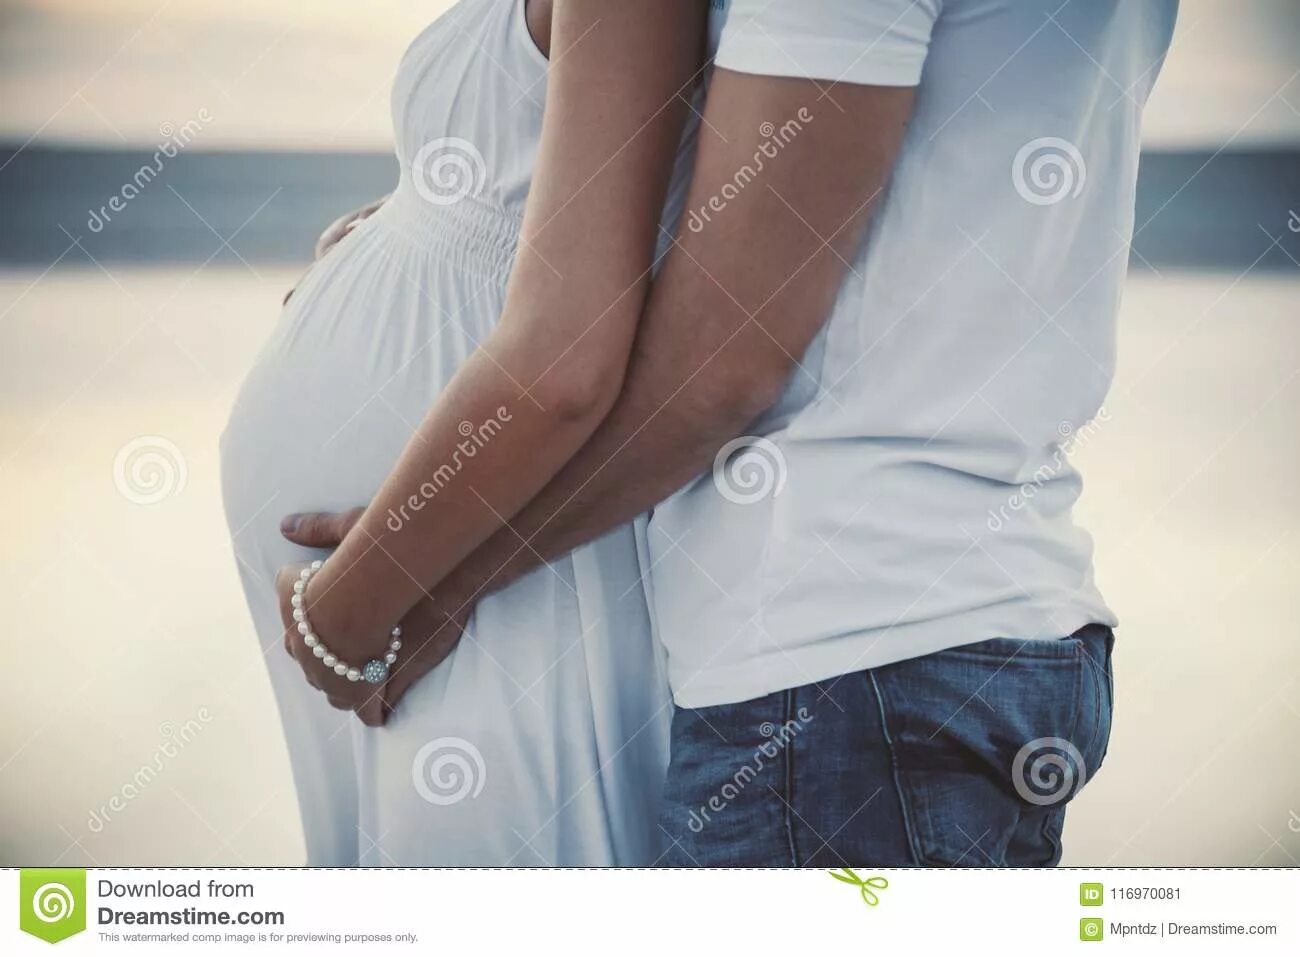 Обнимает беременную. Мужчина обнимает беременную. Объятия беременных. Мужчина обнимает беременную женщину.